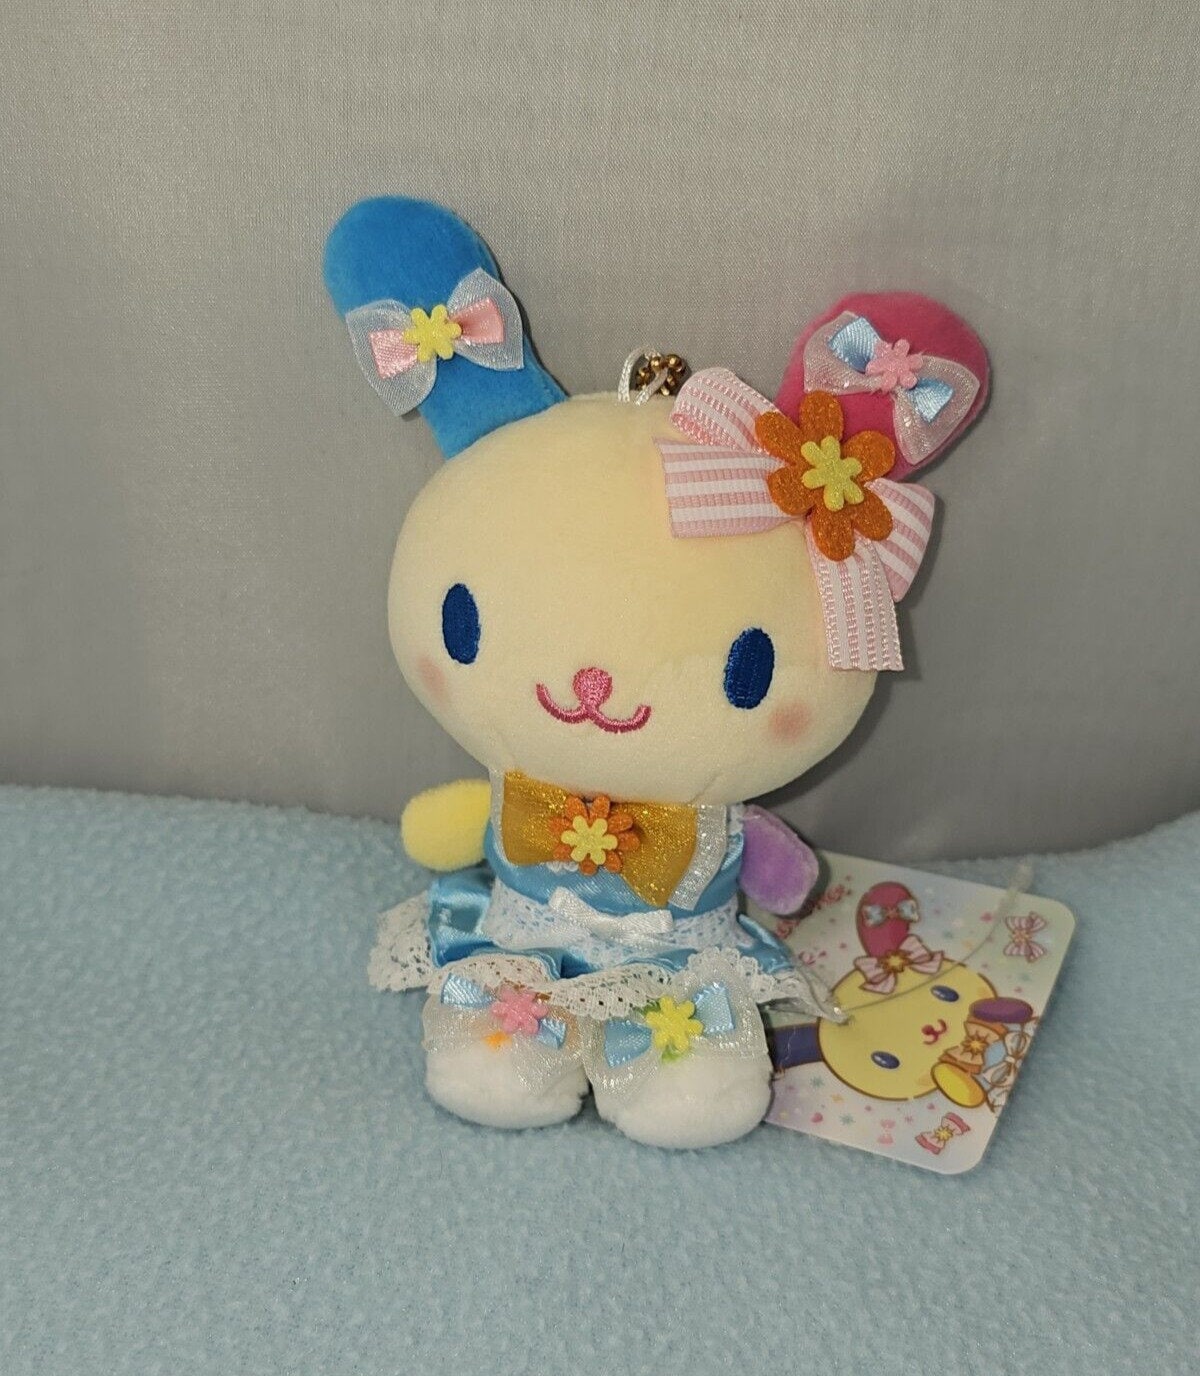 Keychain bunny plush toy rabbit doll - Shop NataliaDollsandToys Keychains -  Pinkoi